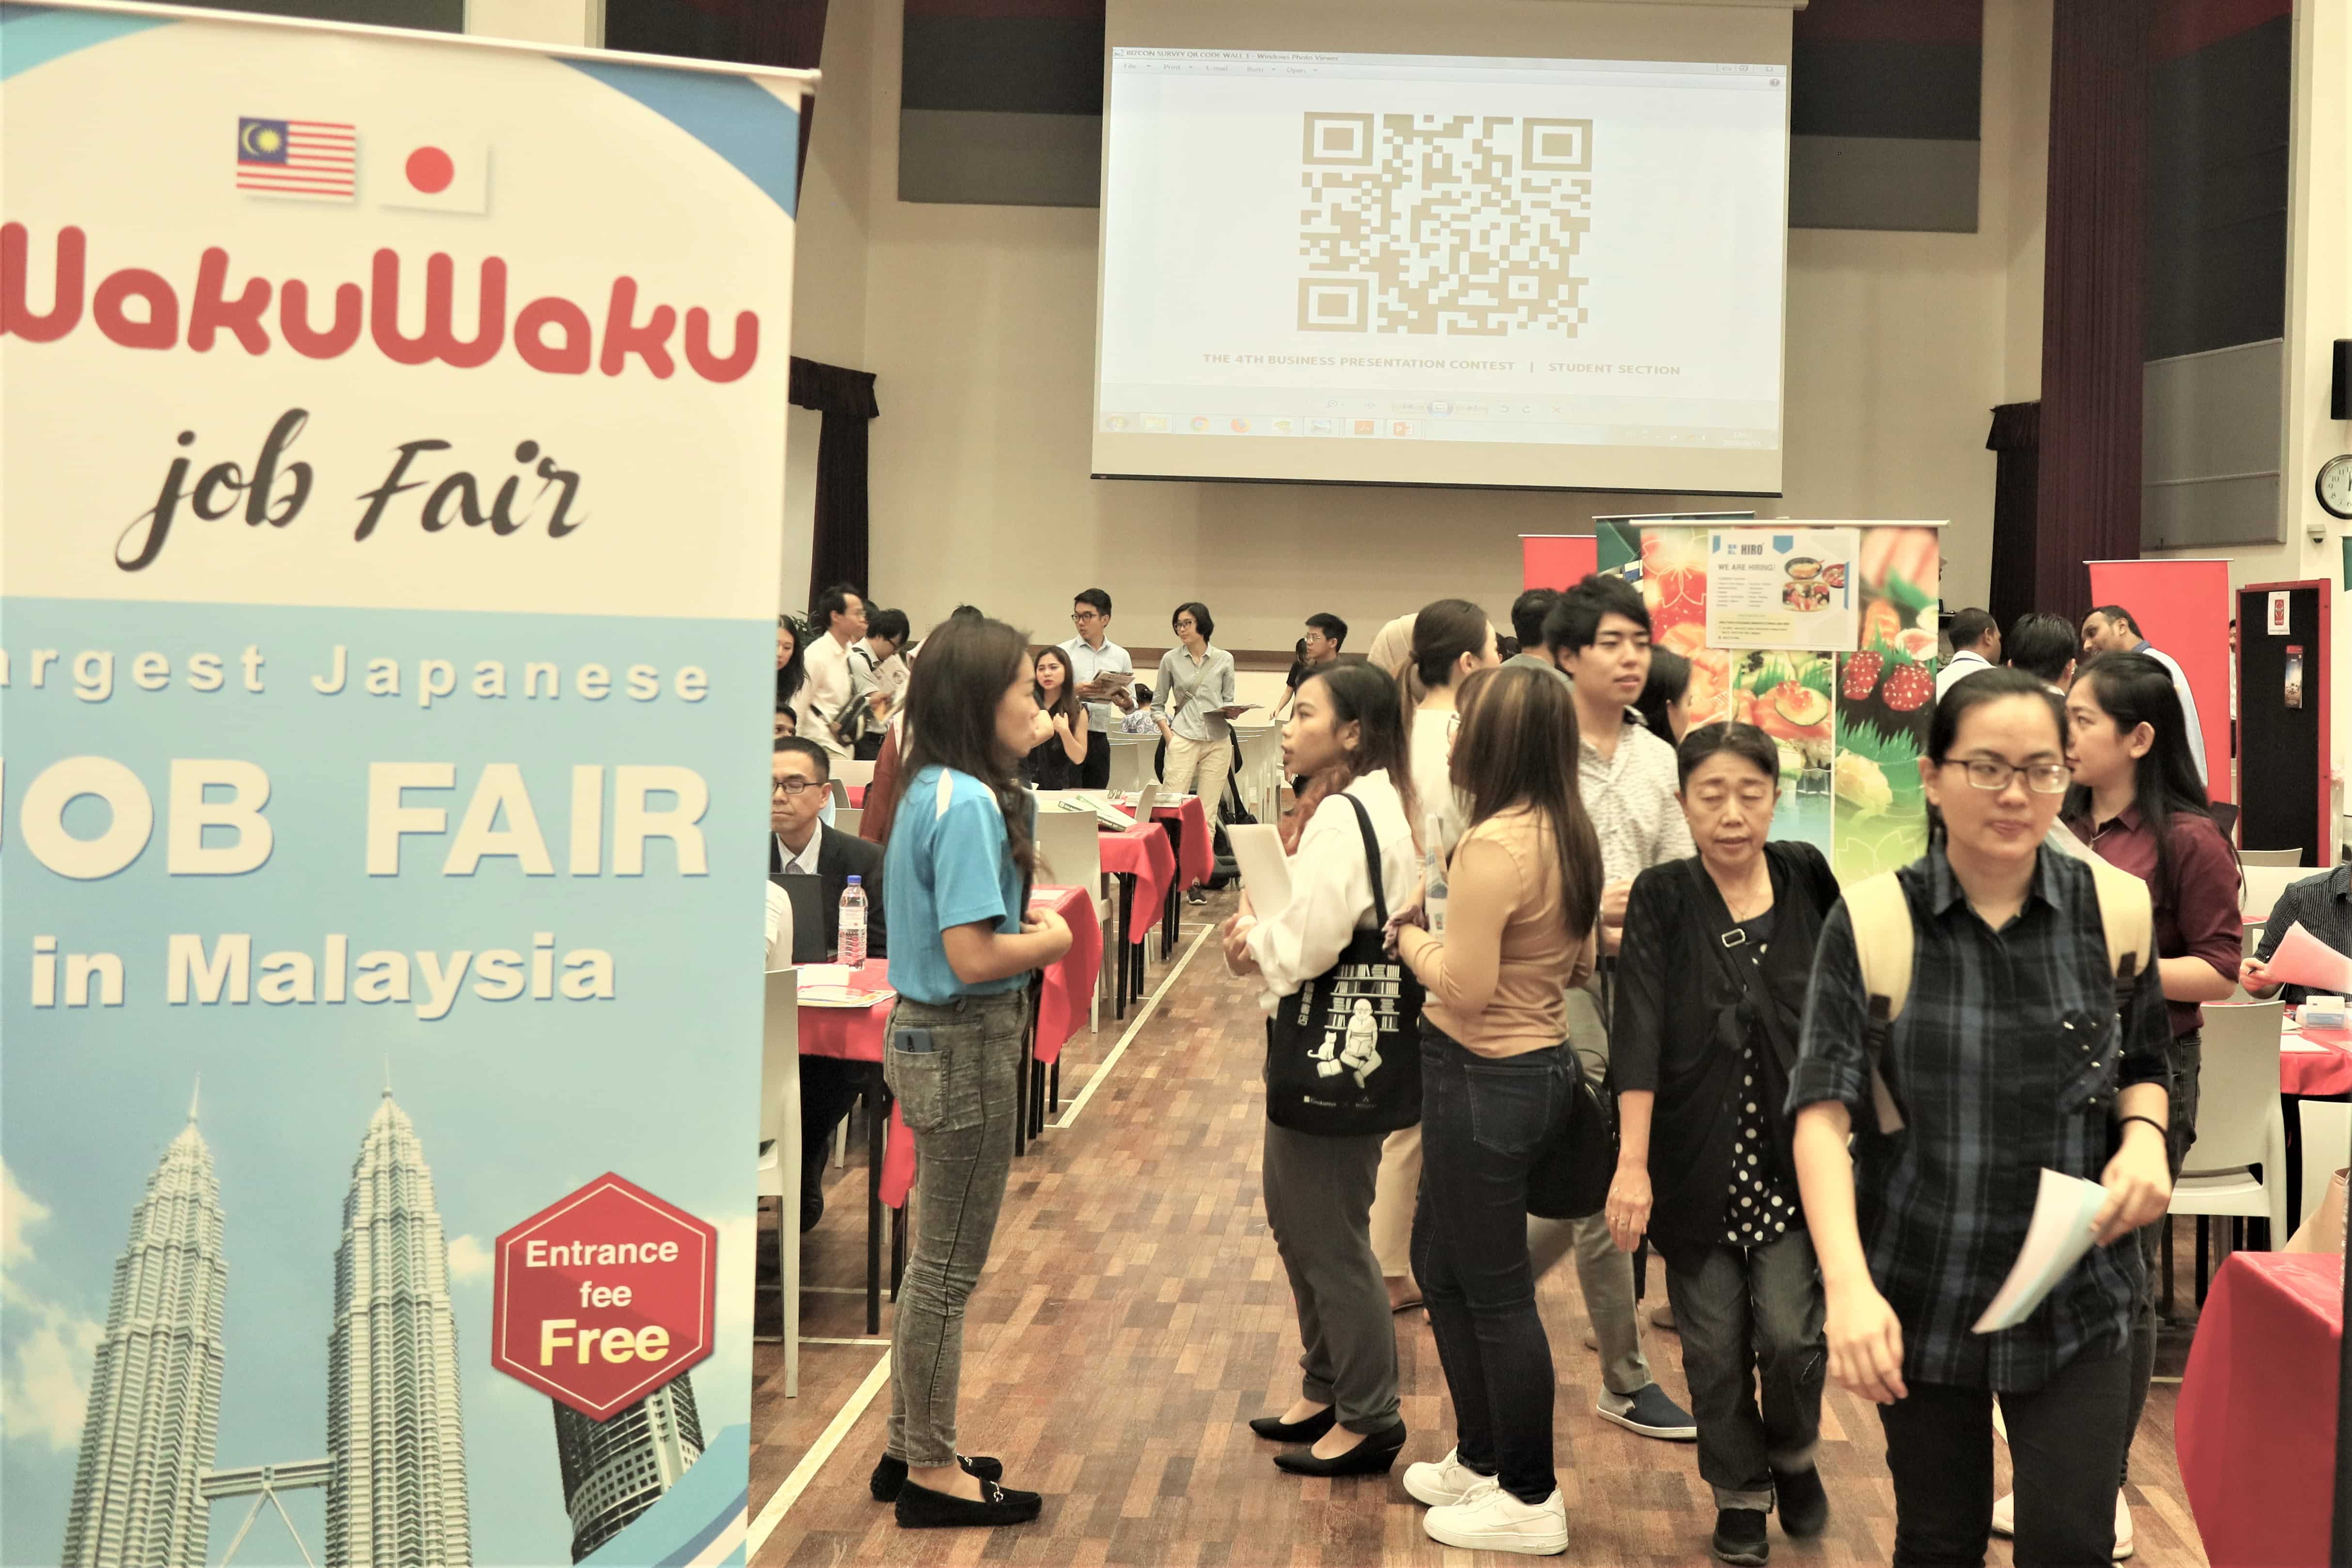 WakuWaku Job Fair